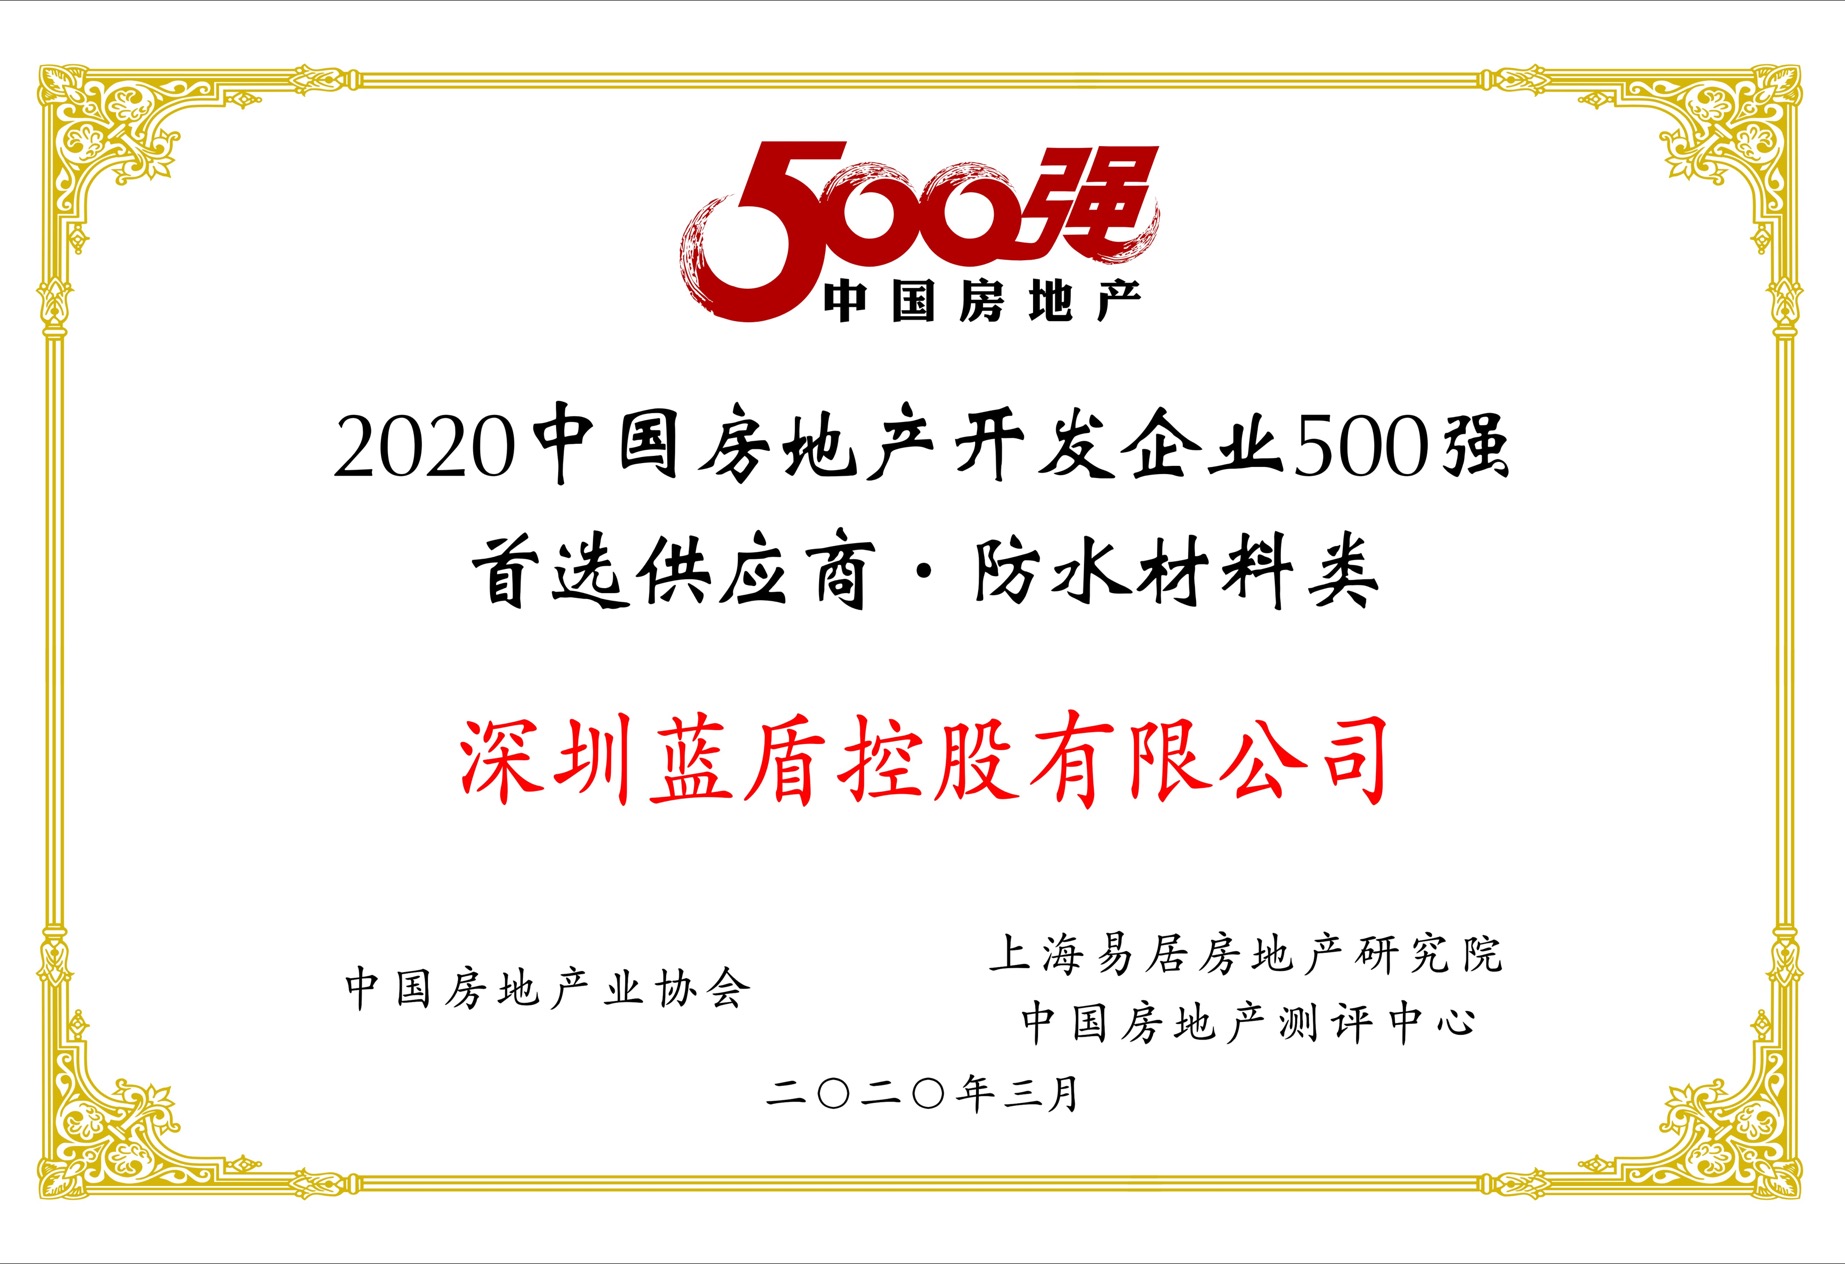 2020年中国房地产开发企业500强首选供应商服务商